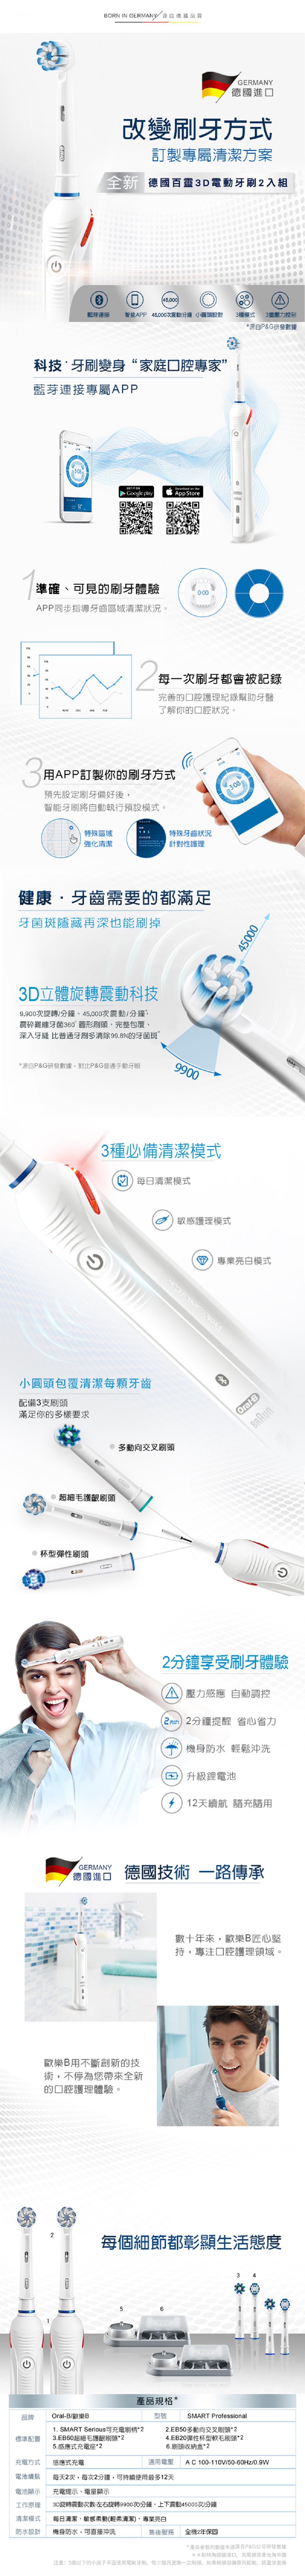 百靈歐樂B電動牙刷雙握柄組,藍芽連接,45000次震動/分鐘,小圓頭設計,3種模式,3重壓力控制,